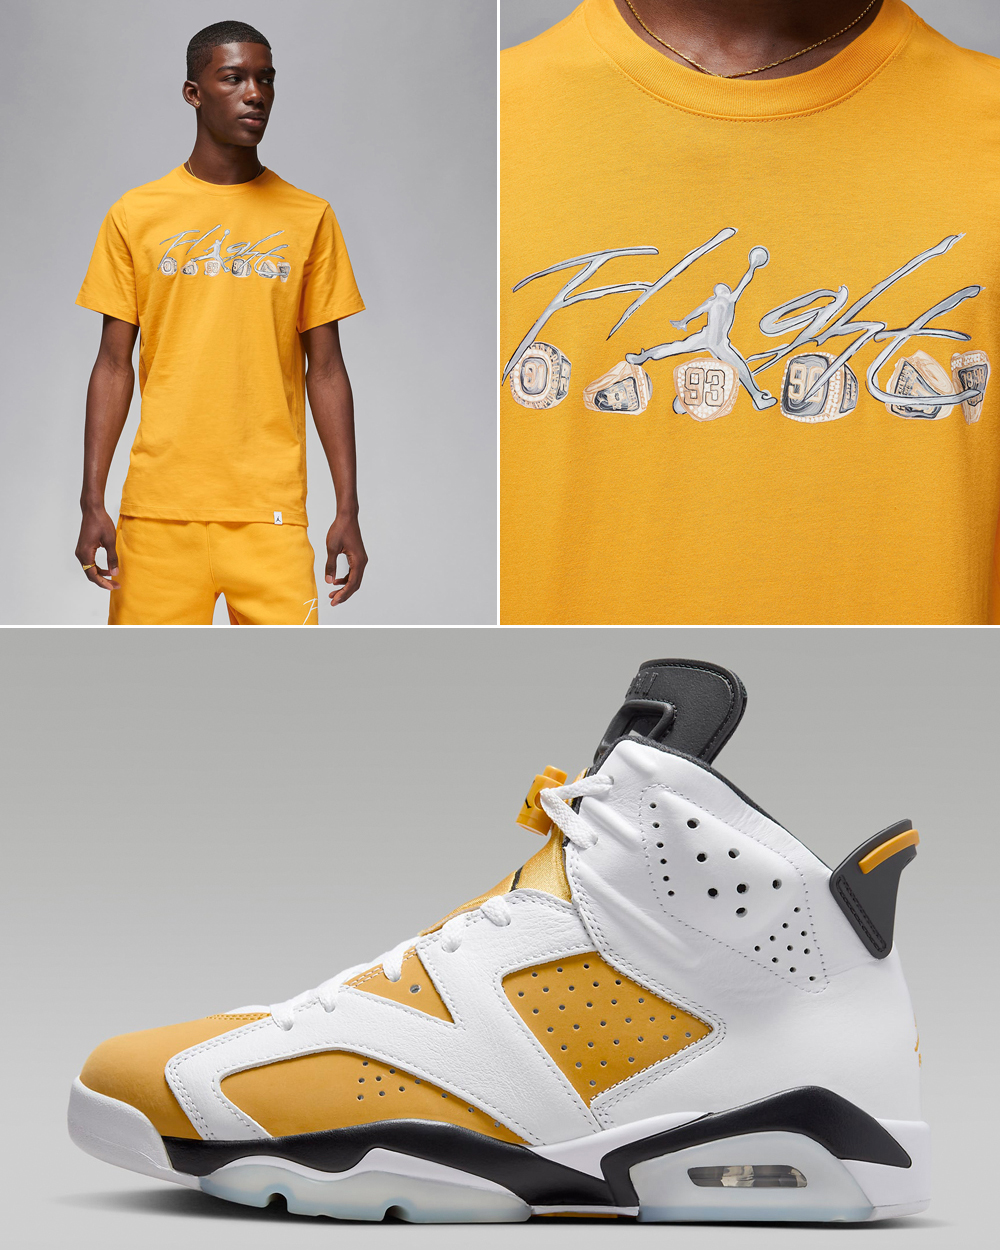 Air-Jordan-6-Yellow-Ochre-Matching-Shirt-Outfit